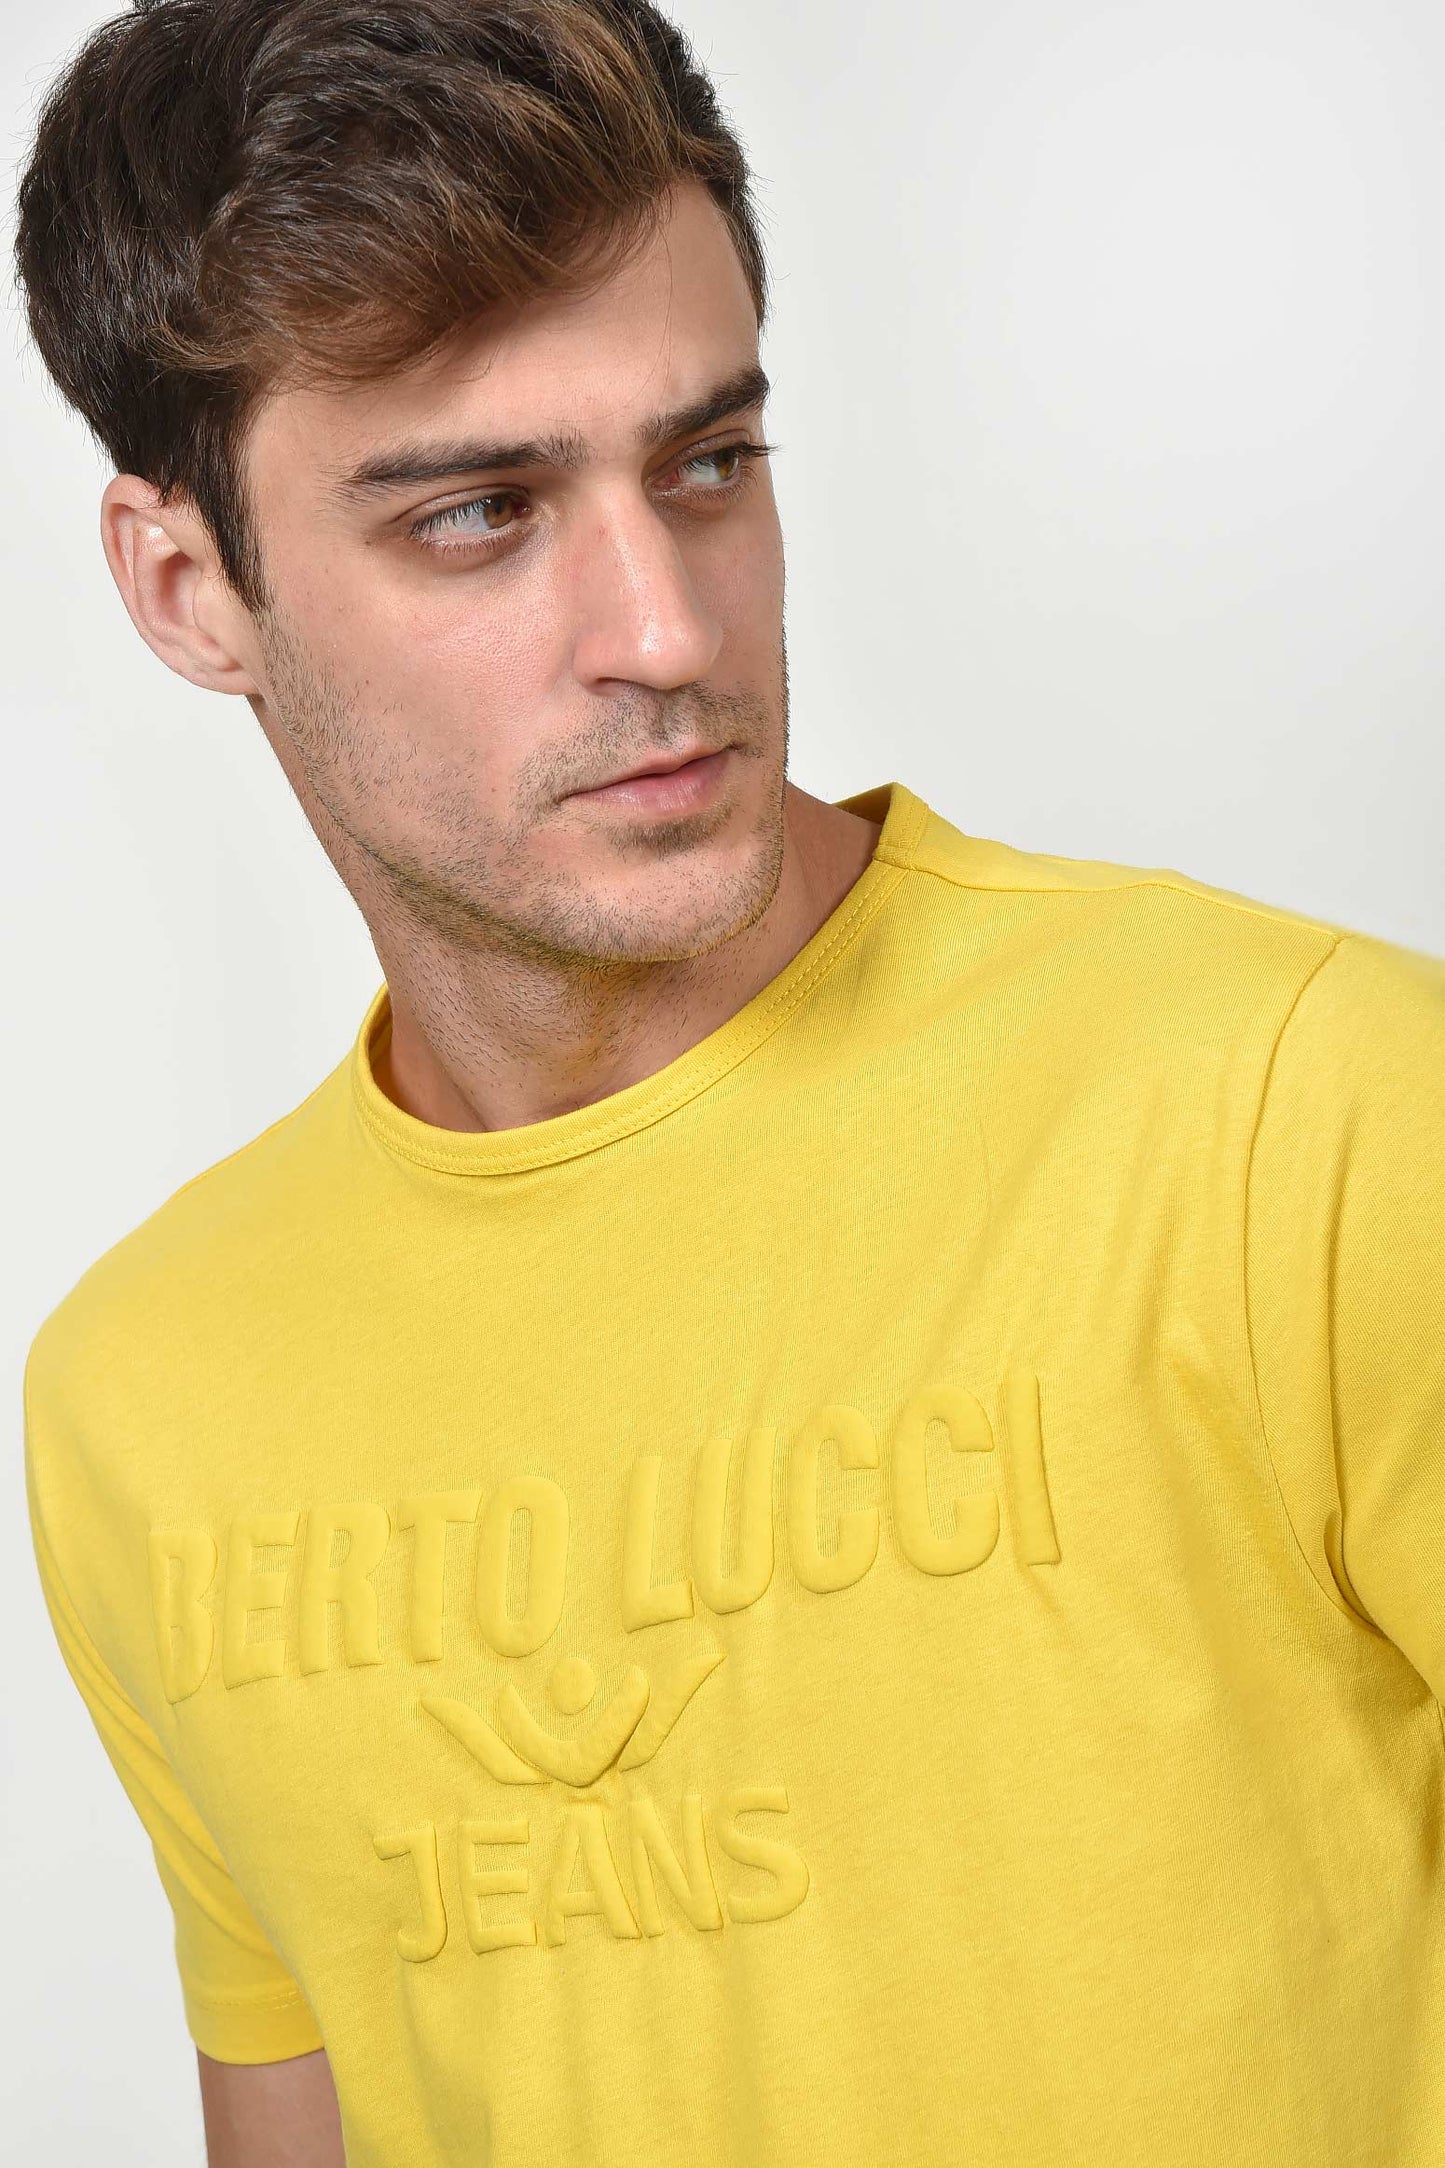 ανδρικό-καλοκαιρινό-t-shirt-με-κέντημα-berto-lucci